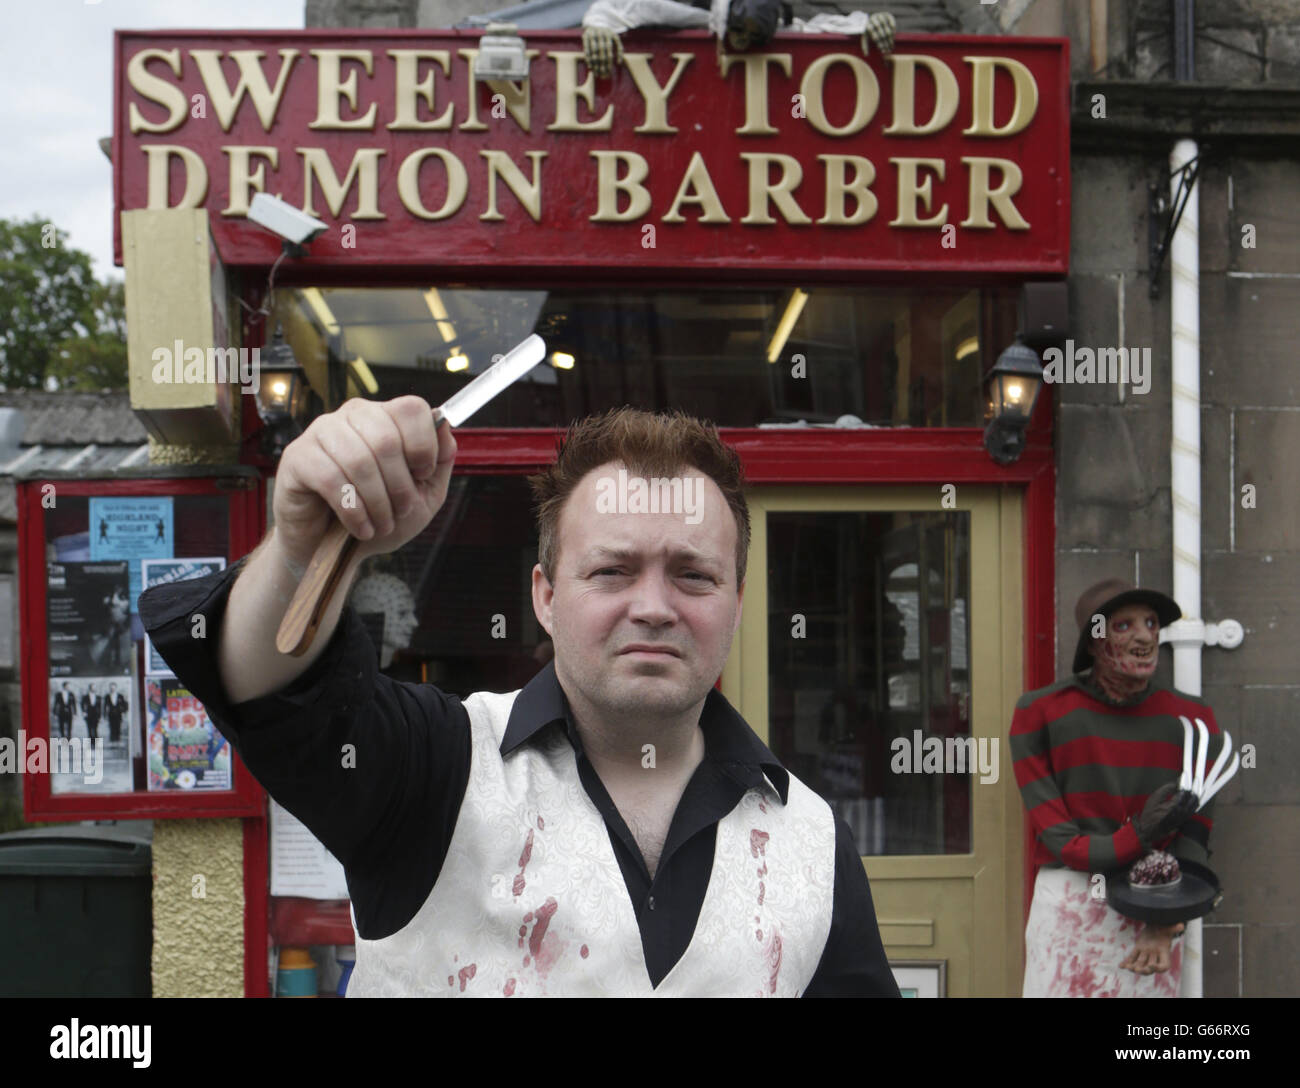 Zuvor unveröffentlichtes Foto vom 25/06/13 von will Robertson in seinem Friseurladen Sweeney Todd Demon Barber in Pitlochry, Schottland. Stockfoto